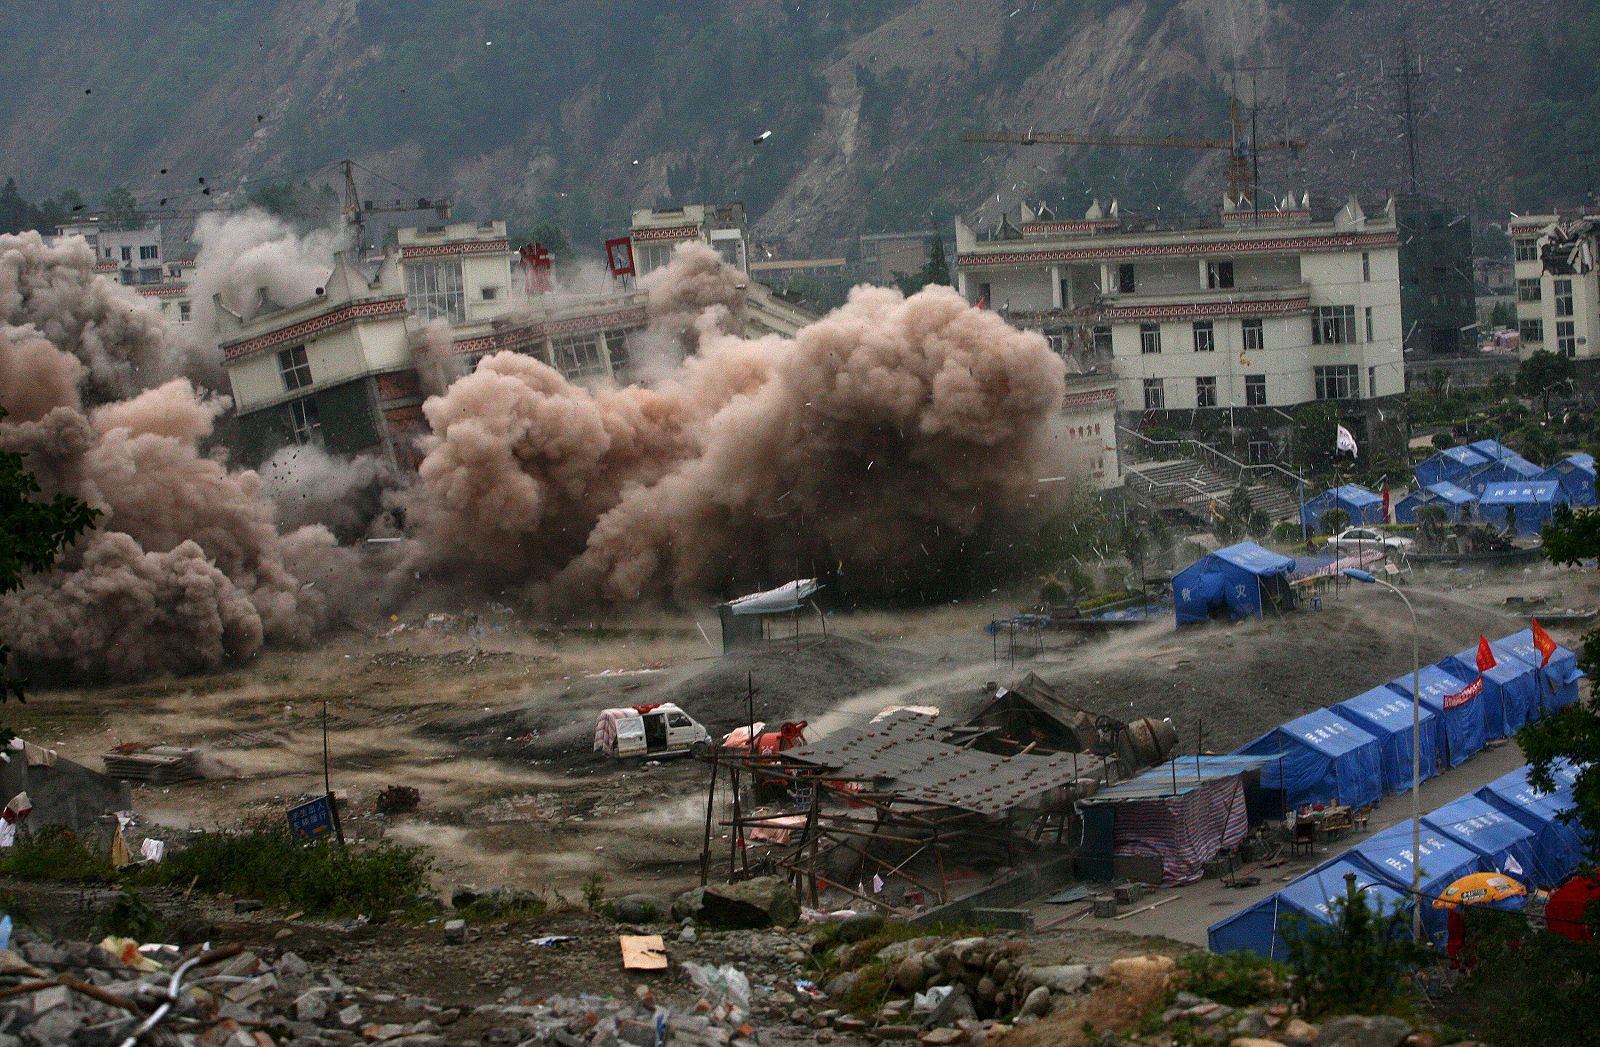 Los ingenieros demuelen de manera controlada el colegio Xuankou, en China, tras el terremoto.